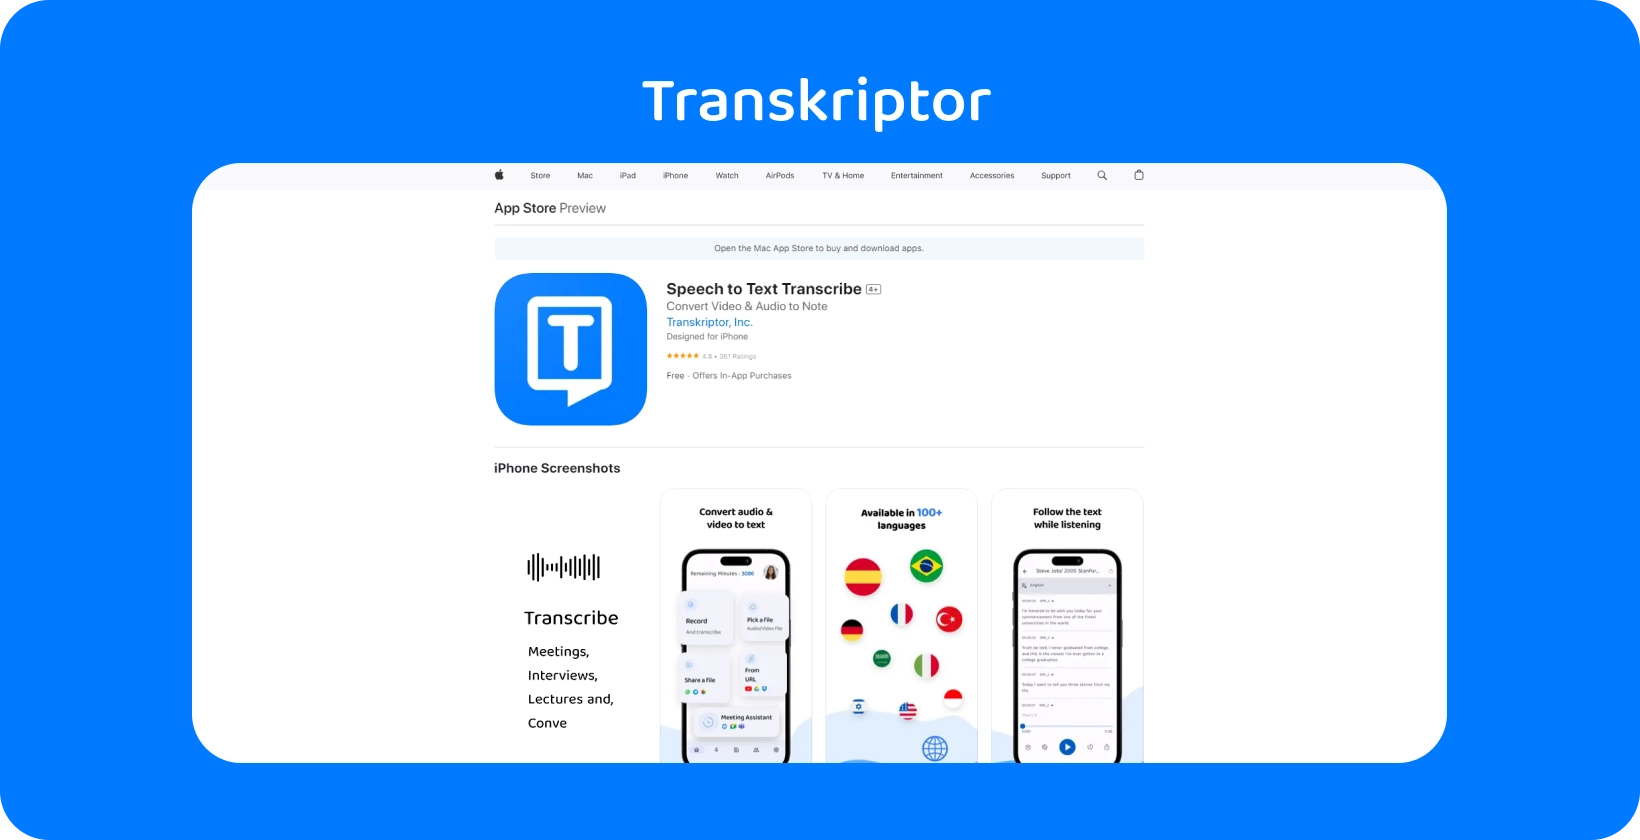 Aplikasi Transkriptor dipamerkan pada iPhone, menonjolkan keupayaan transkripsi pertuturan-ke-teksnya.